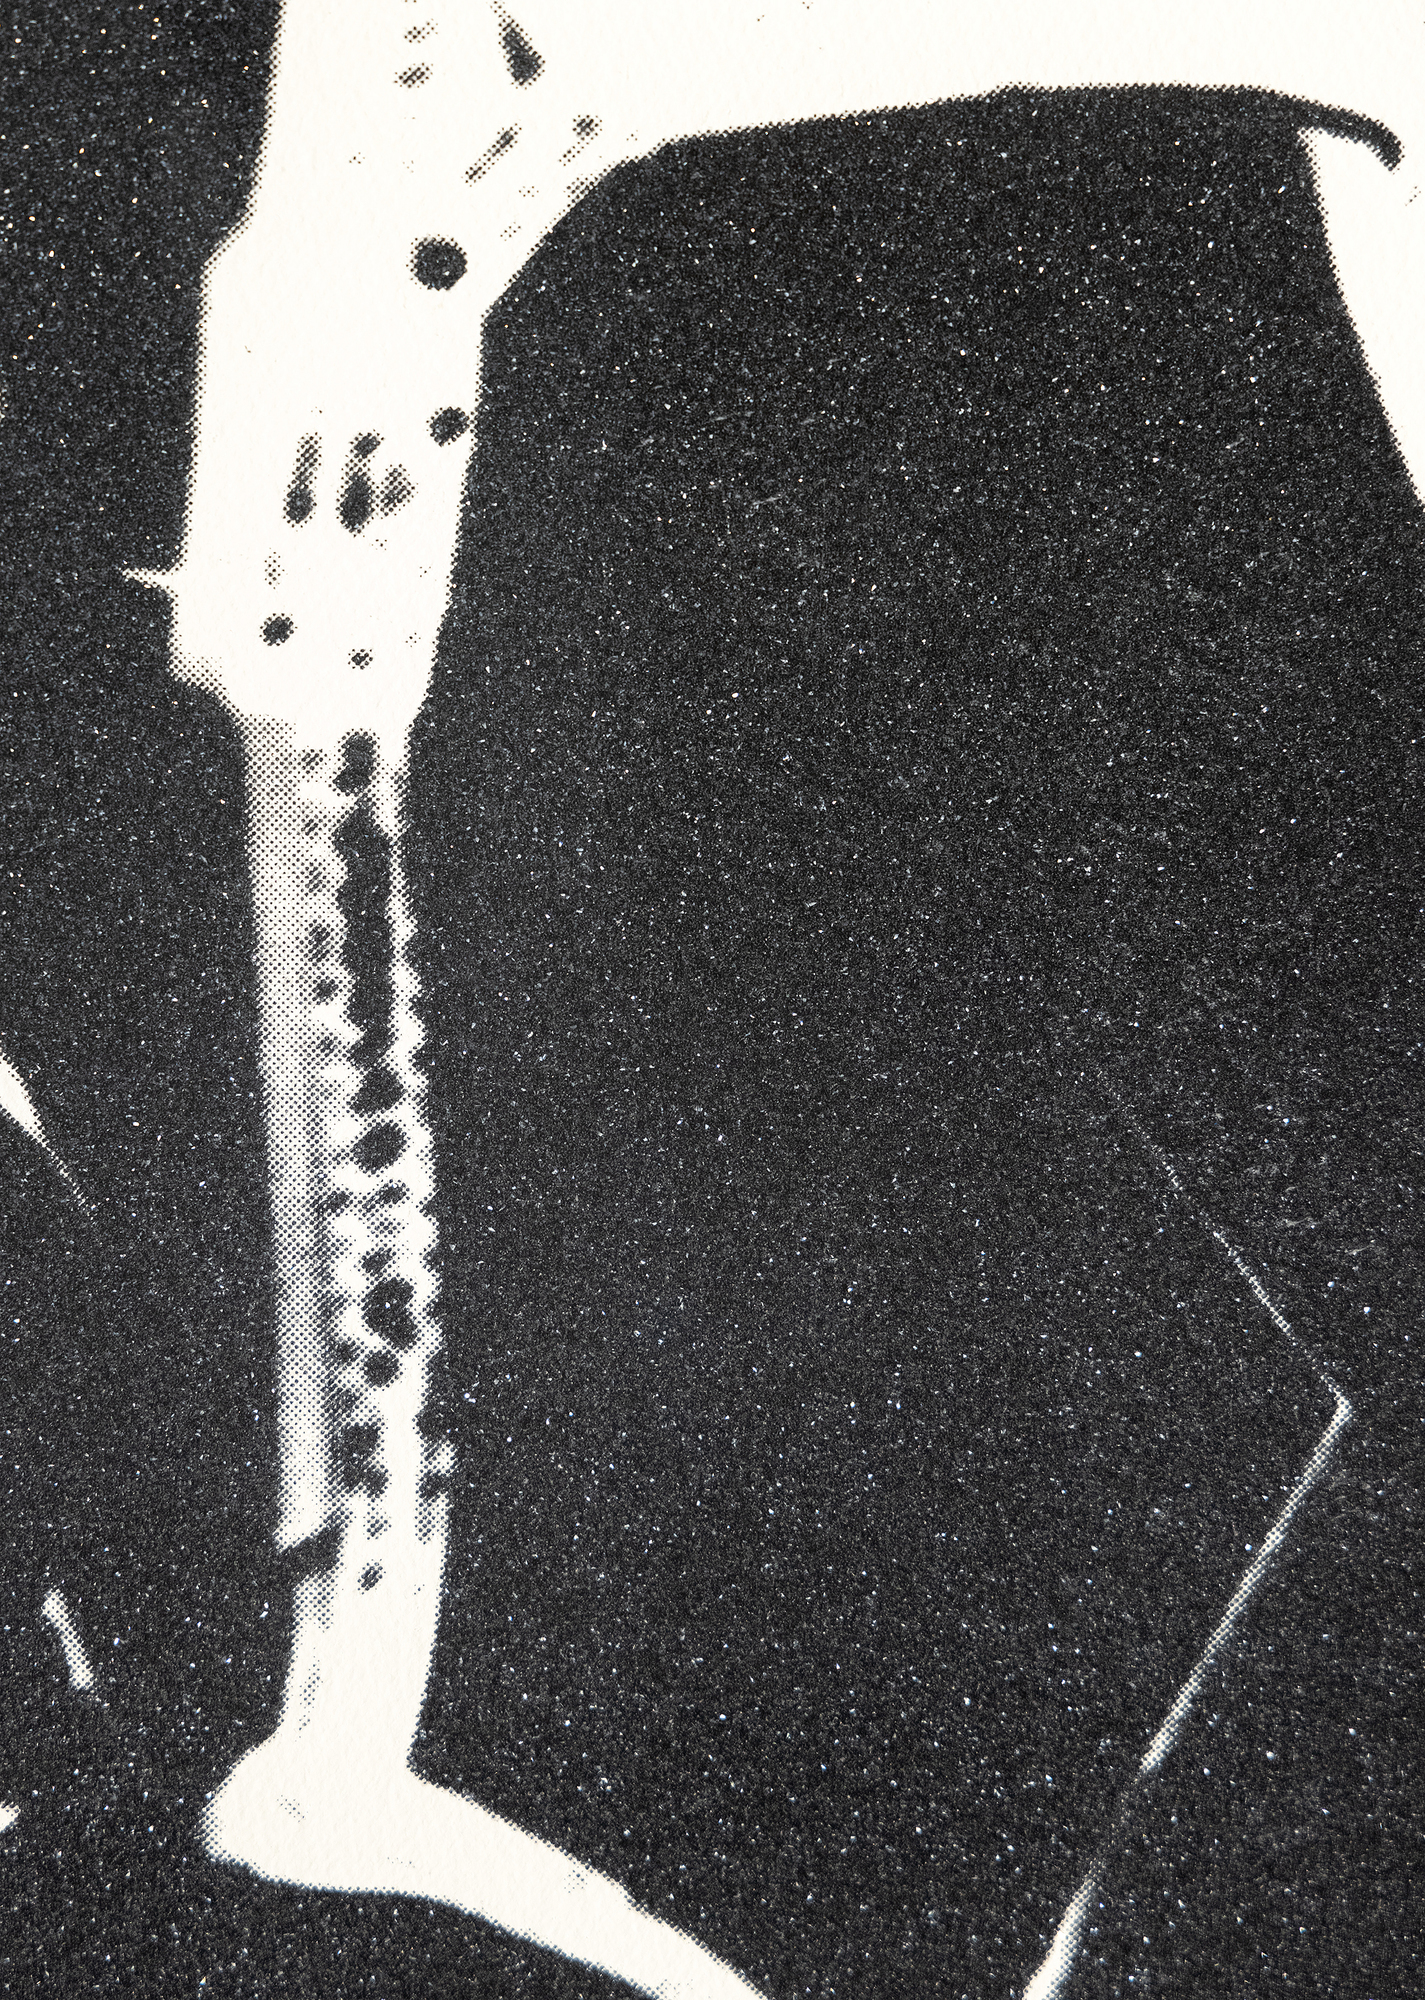 Andy Warhol est synonyme de l'art américain de la seconde moitié du XXe siècle. Il est connu pour ses portraits iconiques et ses produits de consommation, mêlant culture populaire et beaux-arts, redéfinissant ainsi ce que l'art pouvait être et la manière dont nous l'abordons. Si de nombreuses œuvres de Warhol ne représentent pas des personnes célèbres, ses représentations d'objets inanimés élèvent ses sujets à un niveau de célébrité. Warhol a représenté des chaussures pour la première fois au début de sa carrière, alors qu'il travaillait comme illustrateur de mode. Il est revenu à ce thème dans les années 1980, combinant sa fascination pour le consumérisme et le glamour. Dans son désir constant de fusionner la haute et la basse culture, Warhol a choisi de mettre en avant un objet aussi omniprésent que les chaussures. Le sujet peut dénoter la pauvreté ou la richesse, la fonction ou la mode. Warhol donne un aspect glamour à la pile de chaussures, en les recouvrant d'une patine de poussière de diamant brillante, brouillant encore plus le sens entre besoin utilitaire et pièce de style.